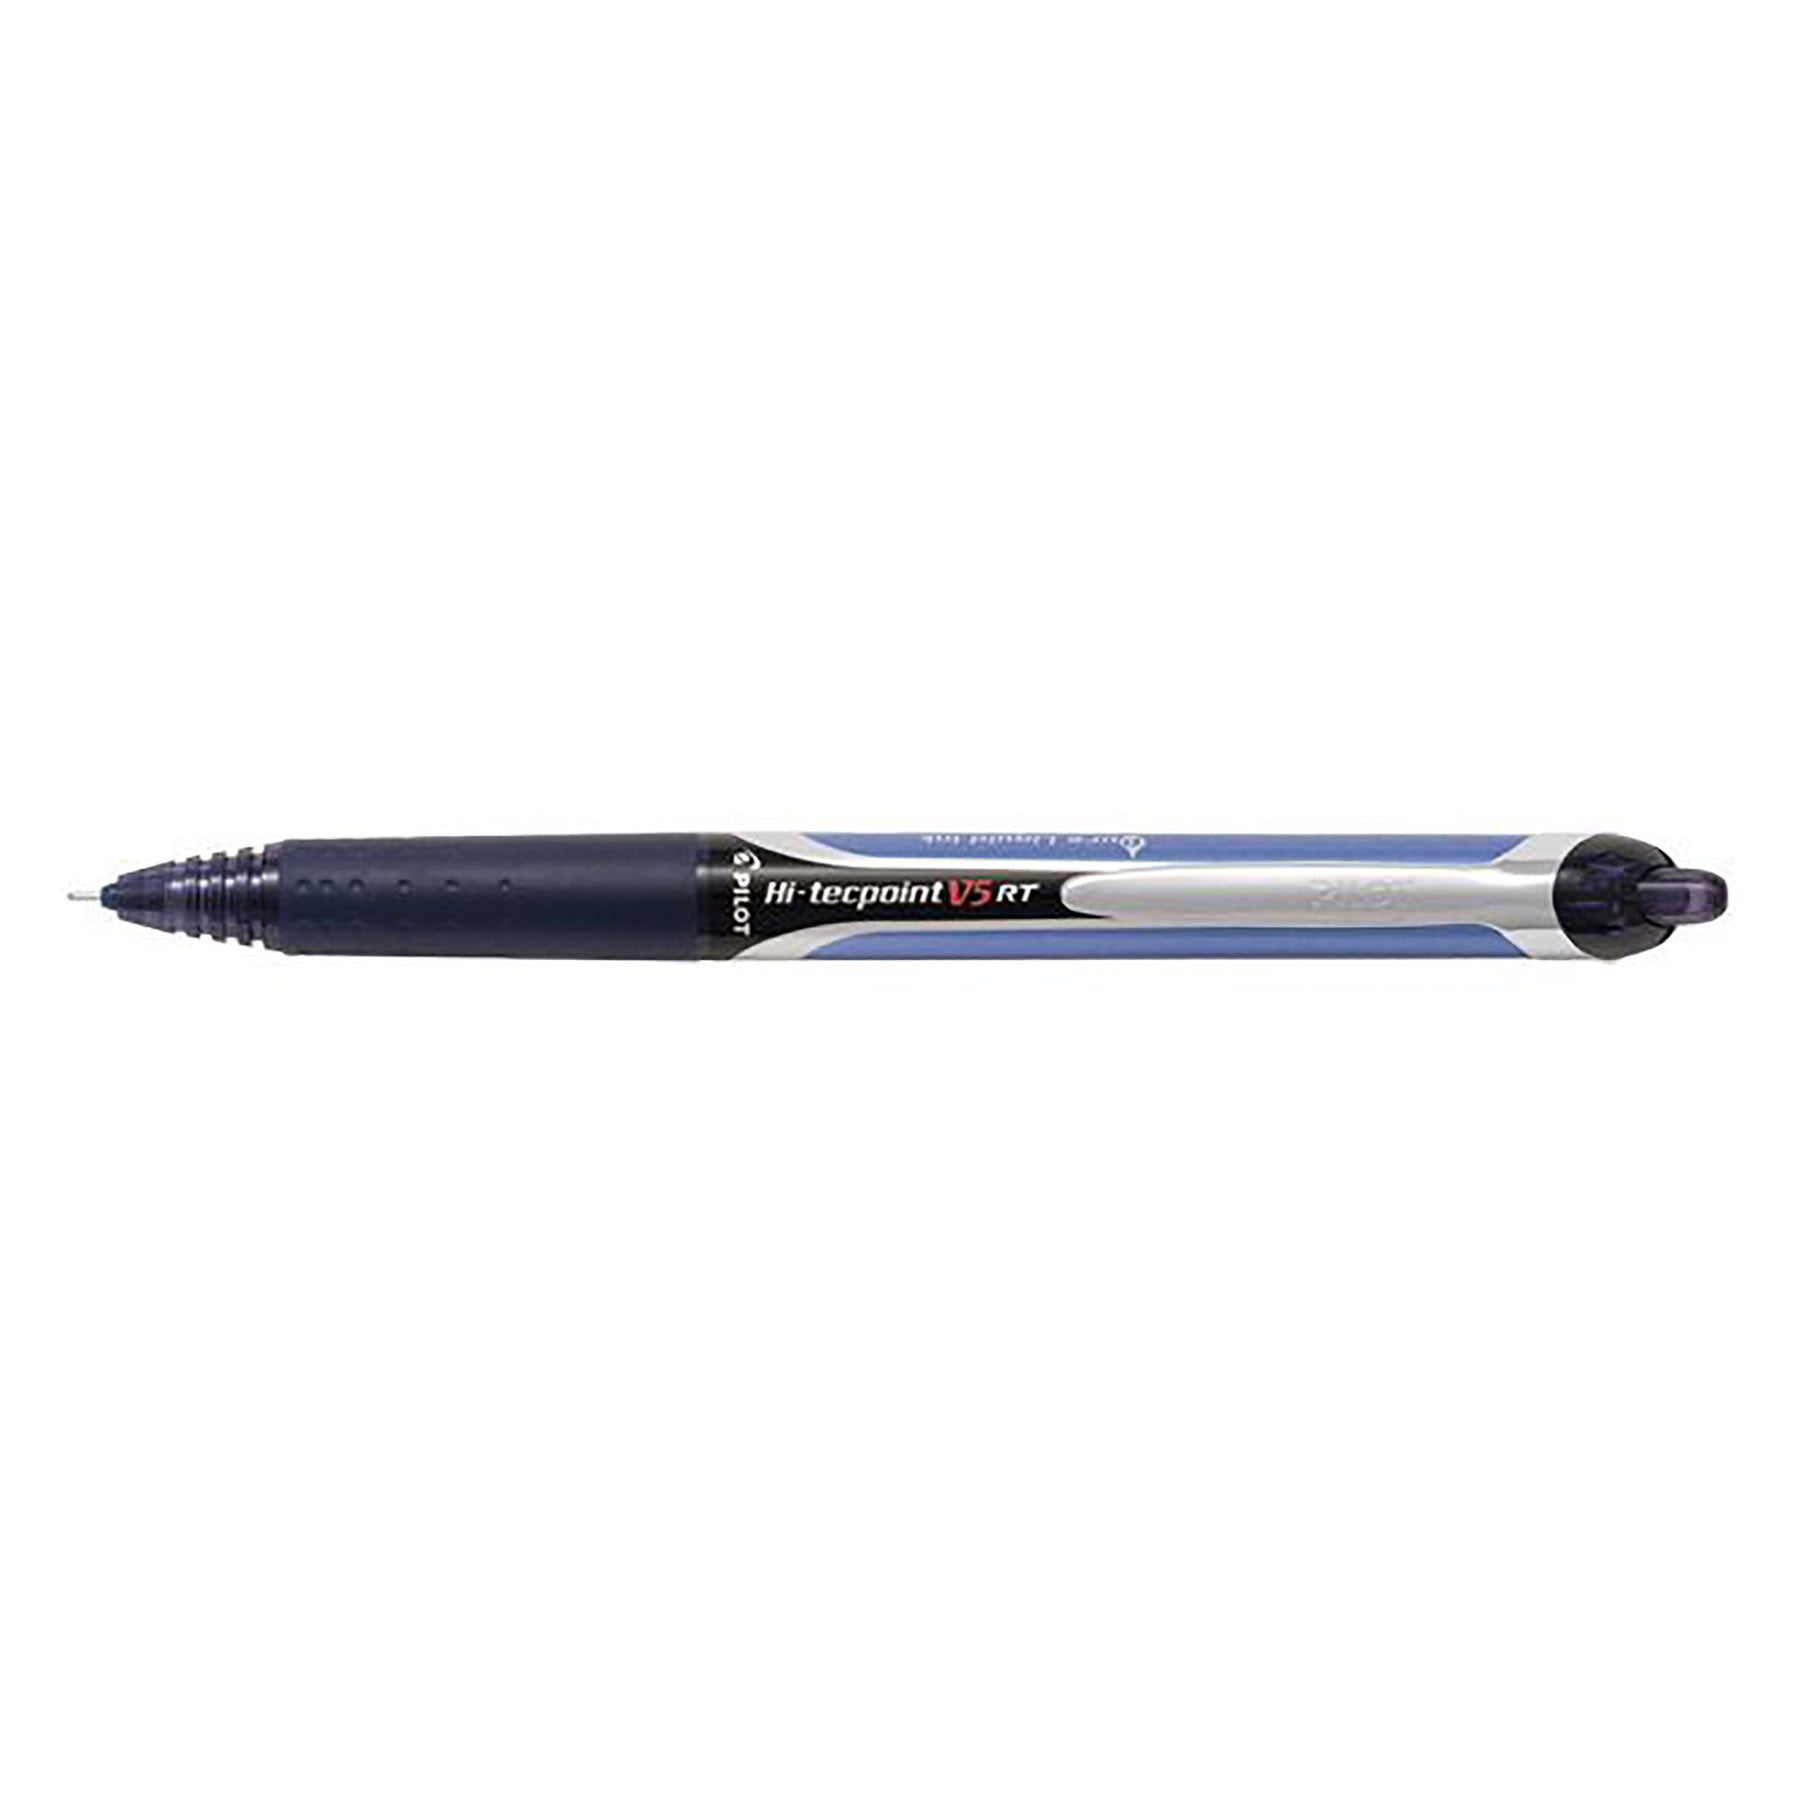 Pilot Hi-Tecpoint V5 Retractable Pen - Blue Black Ink